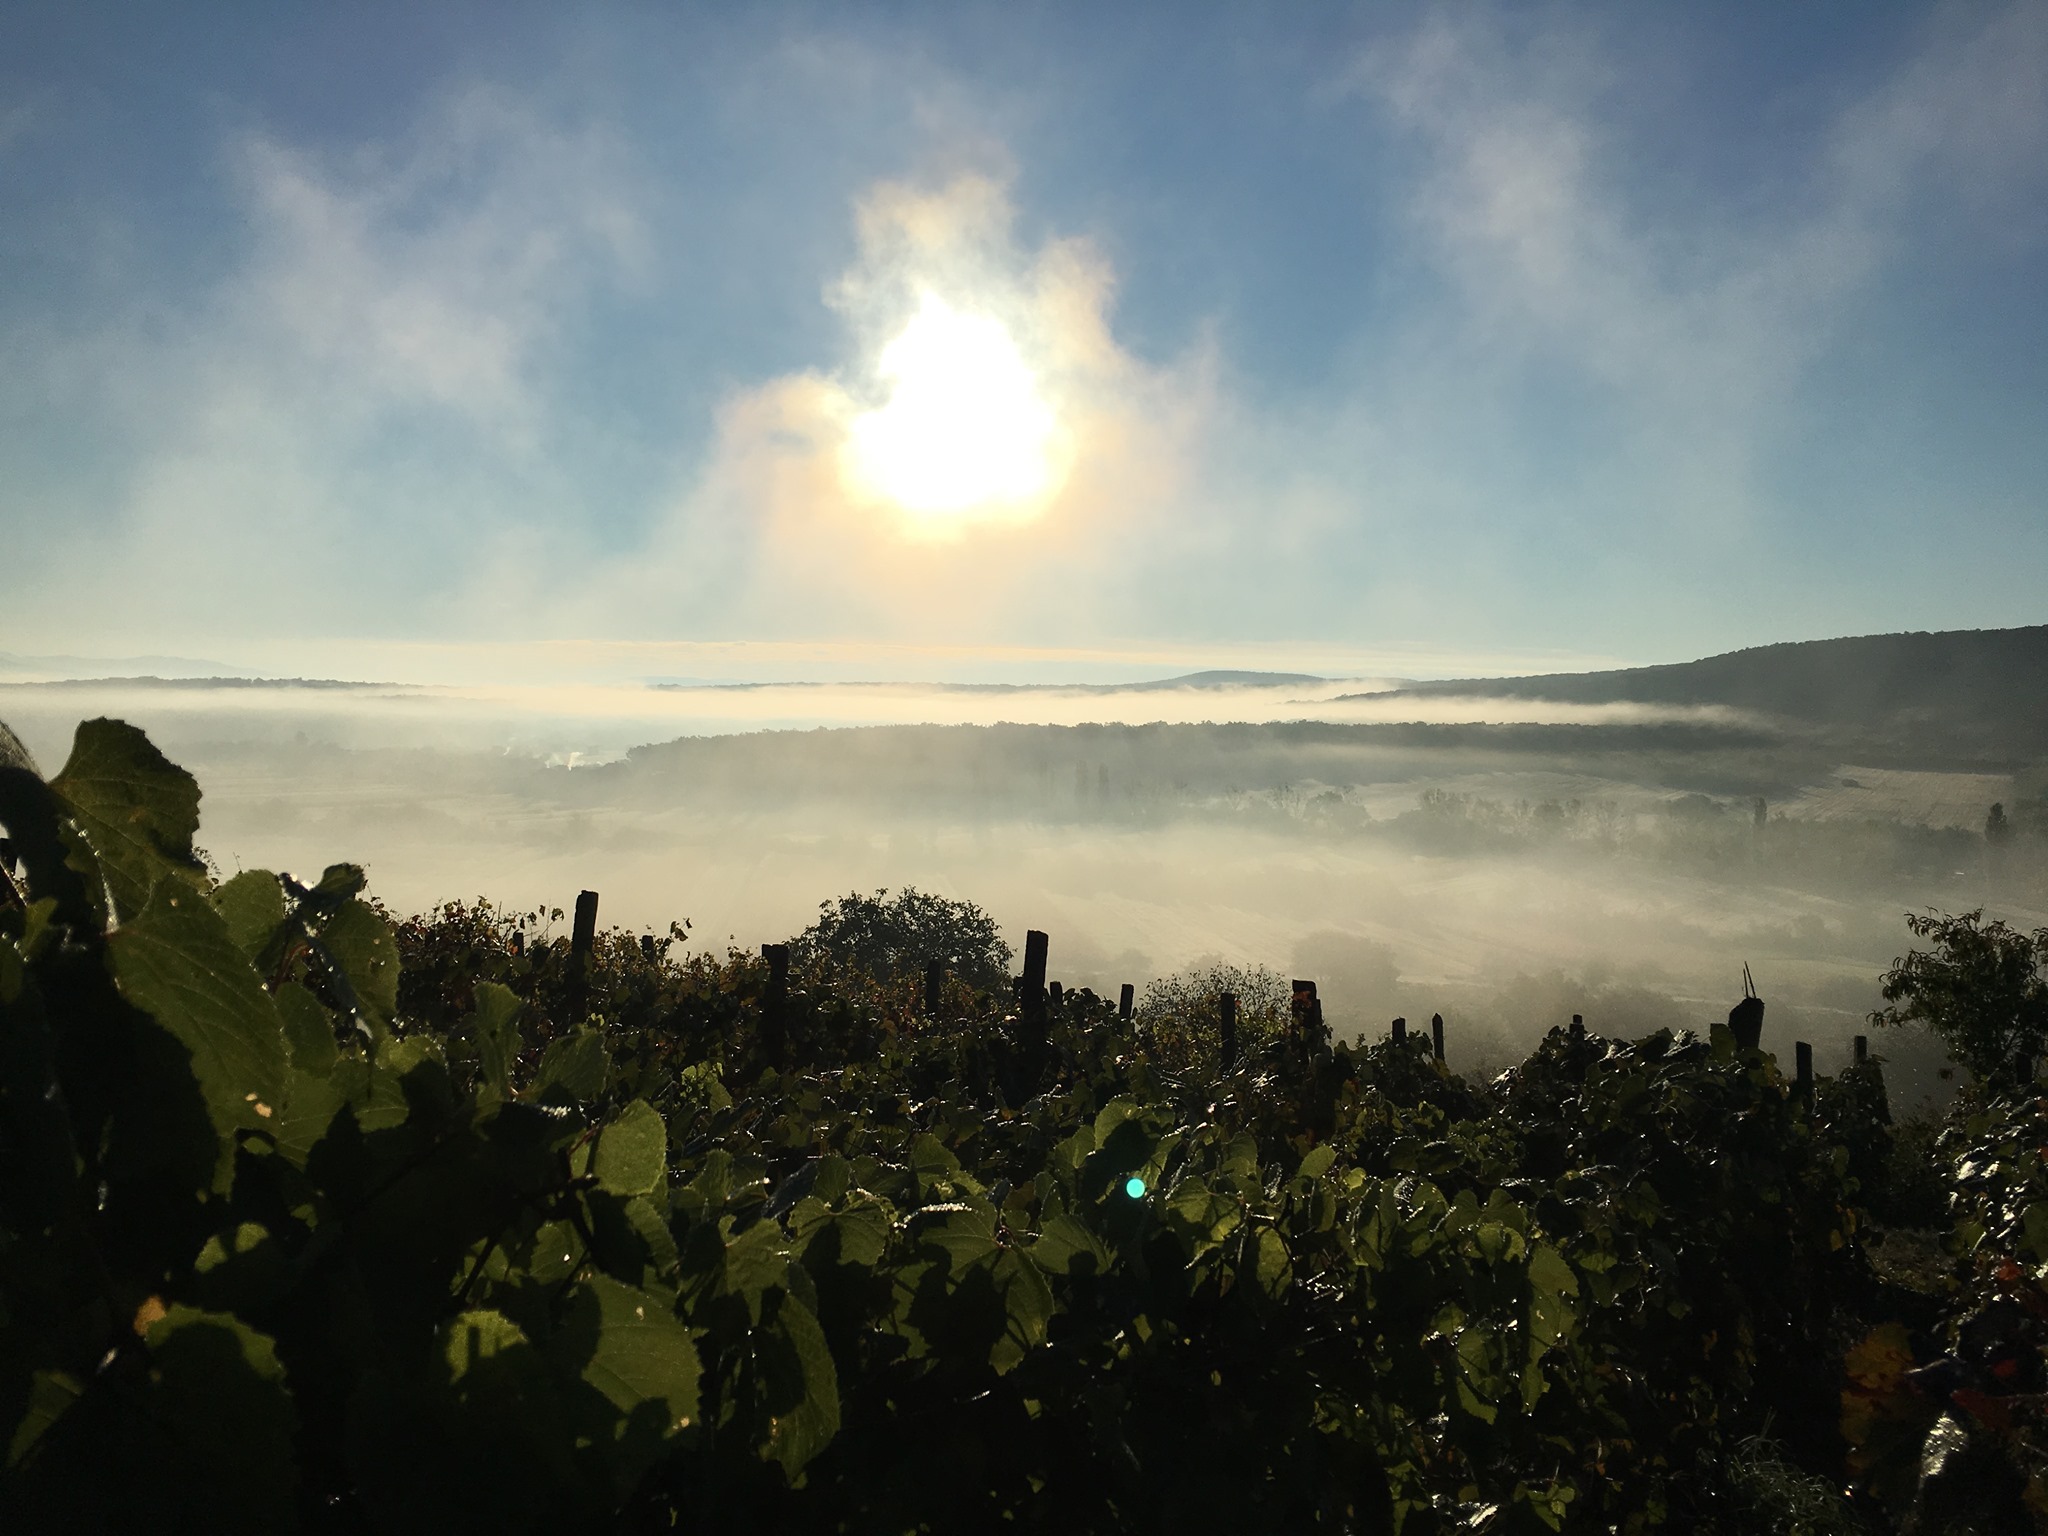 Село Кідьош стоїть на вулканічній породі, а виноградники розбиті на вулканічних пагорбах. Фото: Крістіан Шош